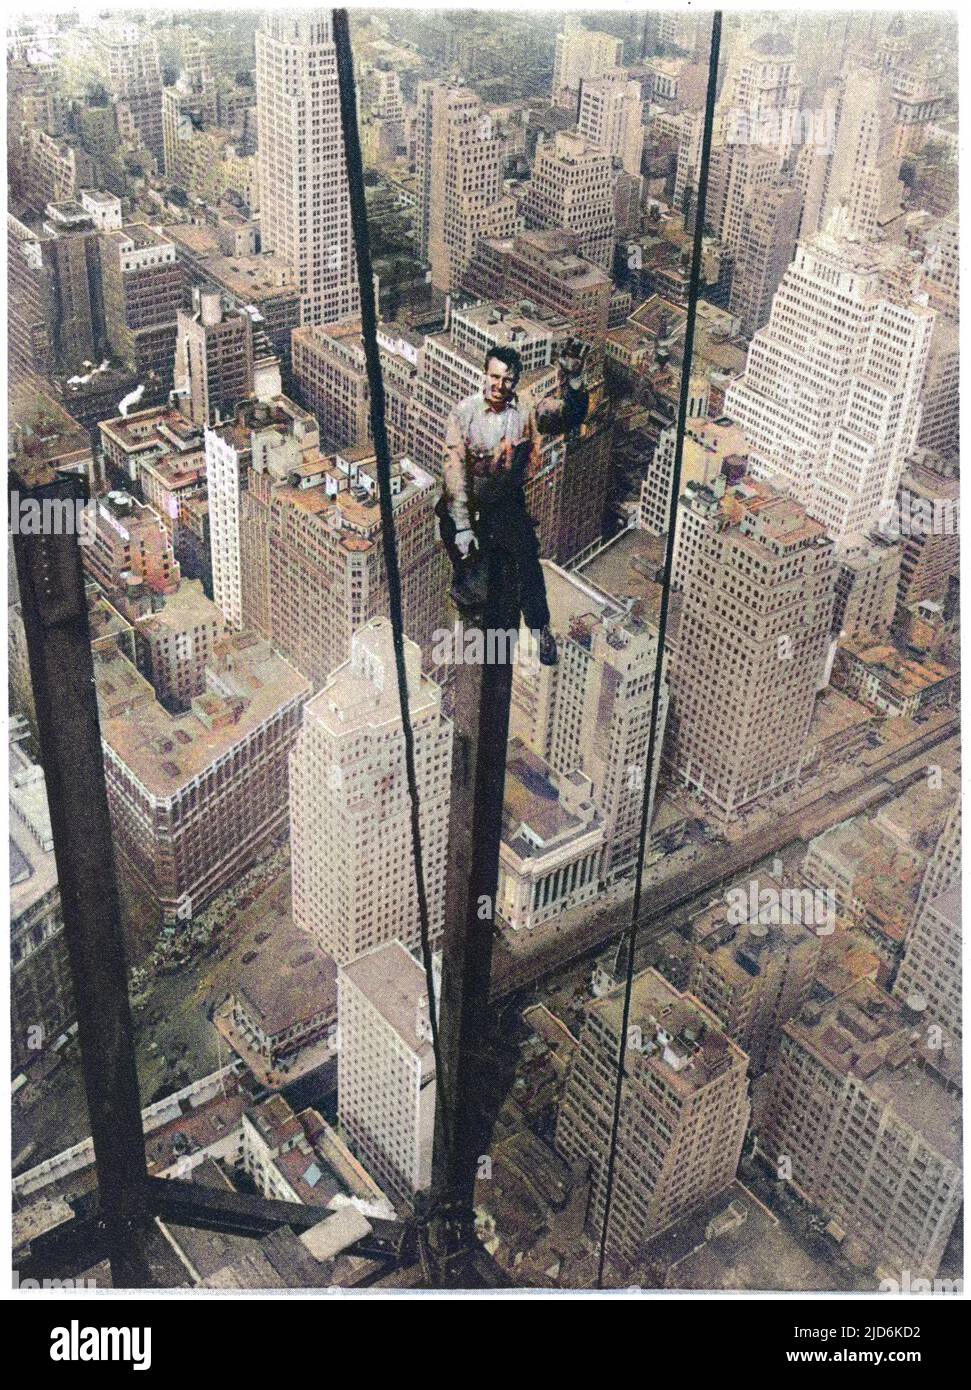 Una vertiginosa perch a 350 metri sopra il livello della strada: Un operaio di New York (Carl Russell) impegnato sul più alto edificio del mondo (all'epoca), l'Empire state Building. Versione colorata di: 10127107 Data: 1930 Foto Stock